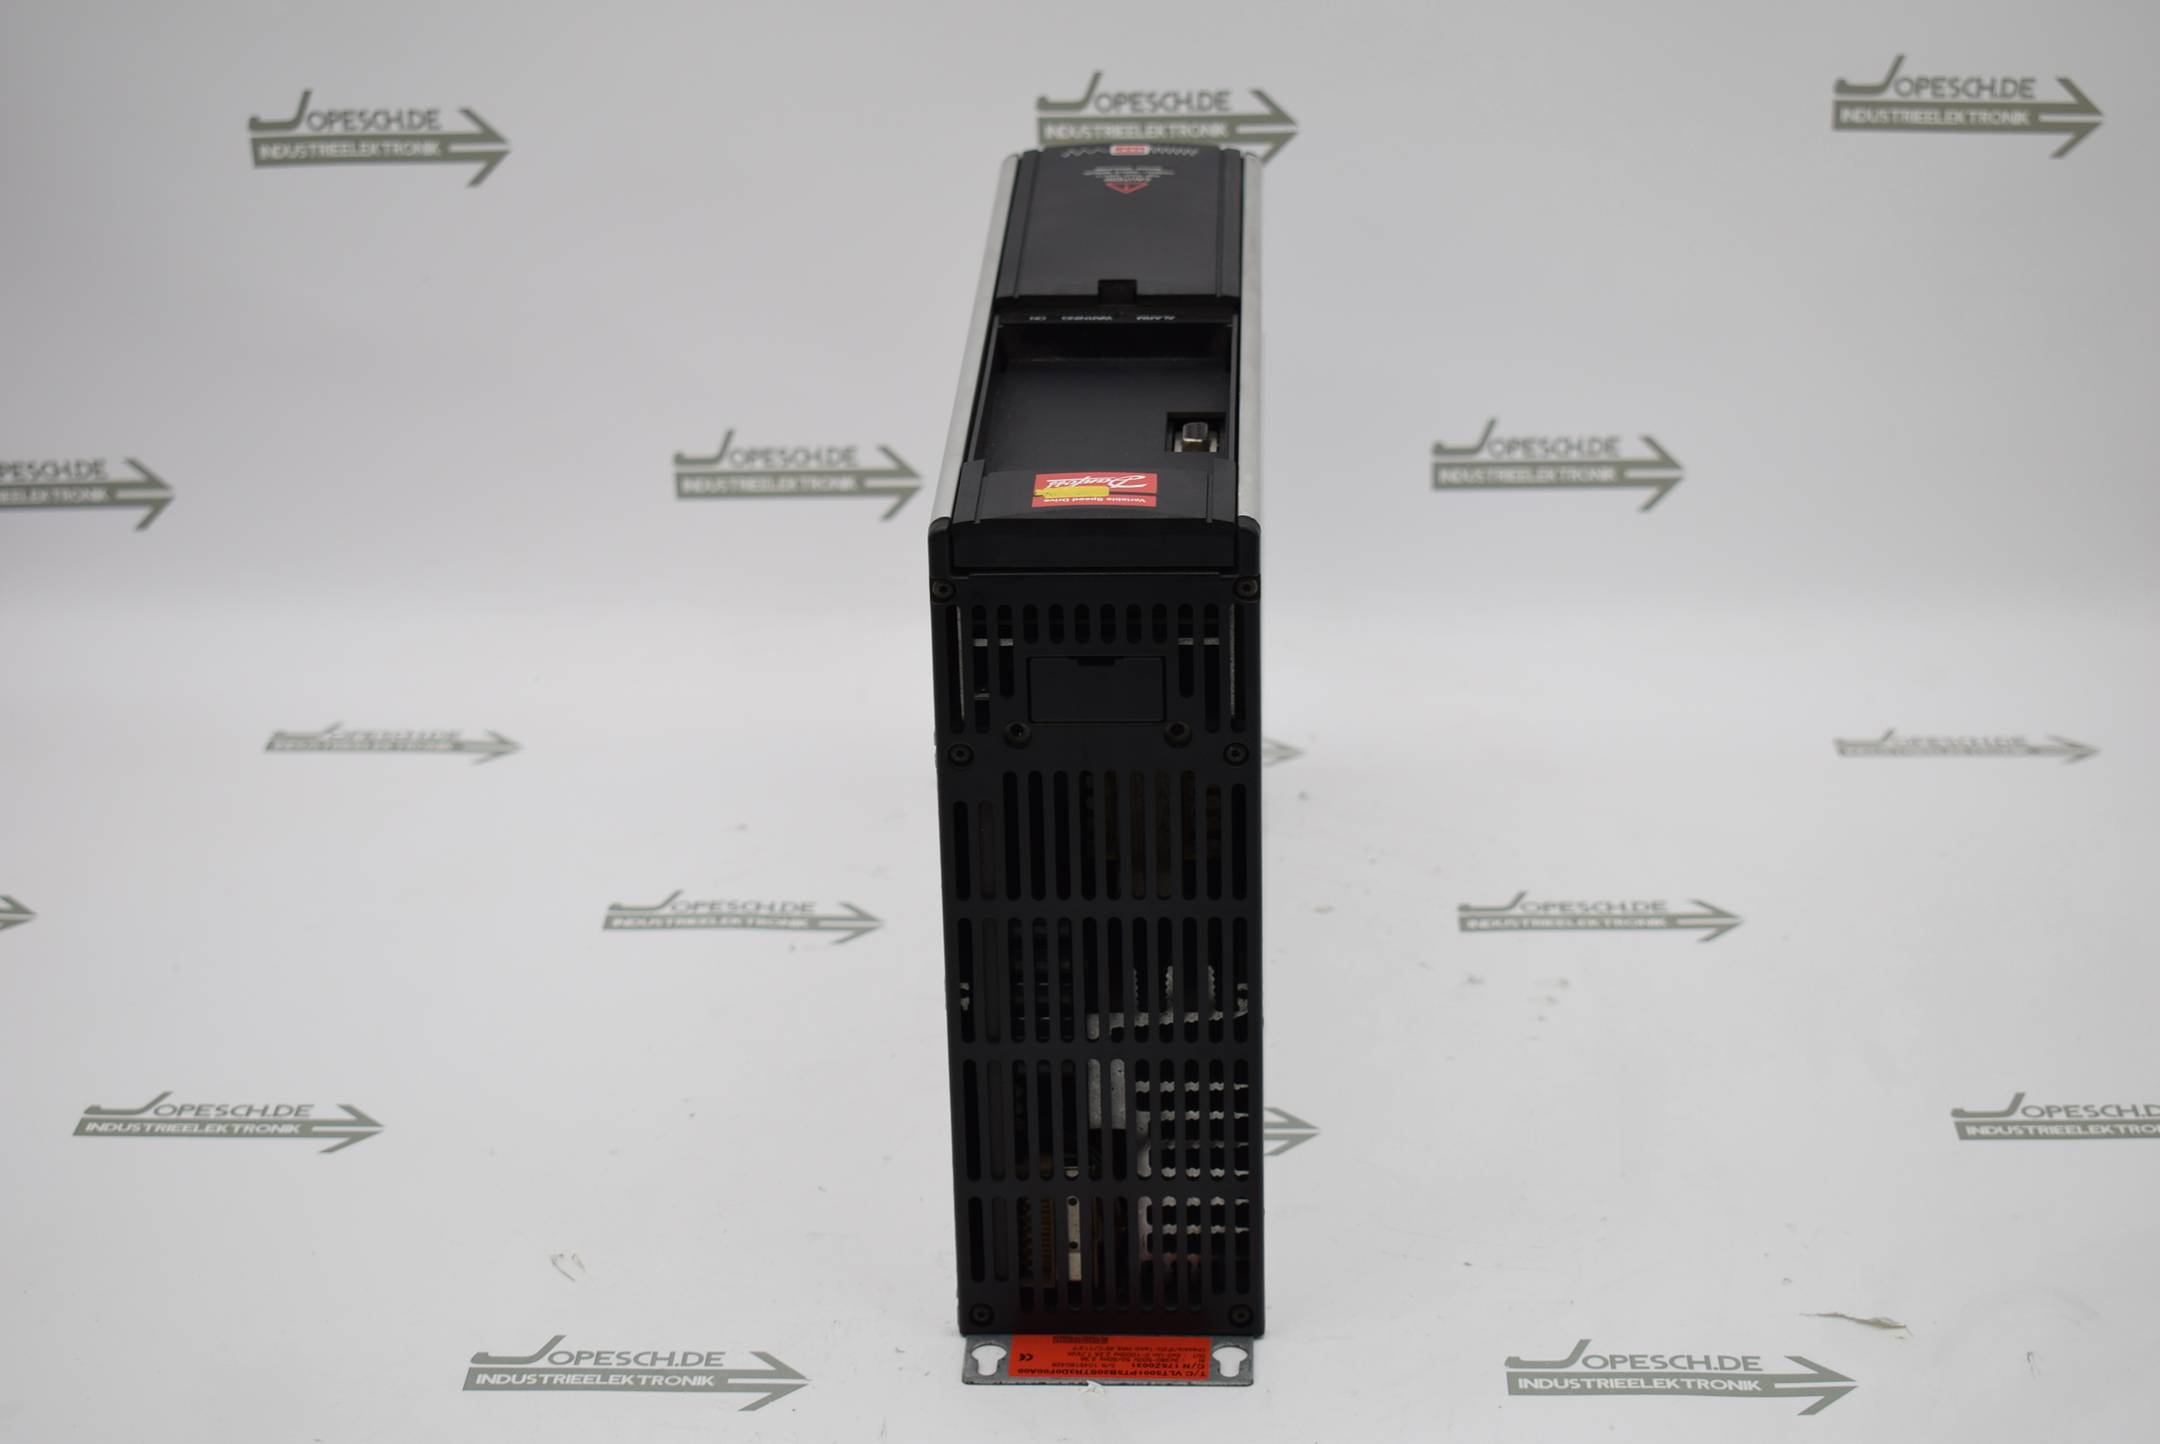 Danfoss VLT® Frequenzumrichter VLT5001PT5B20STR3D0F00A00 ( 175Z0031 )